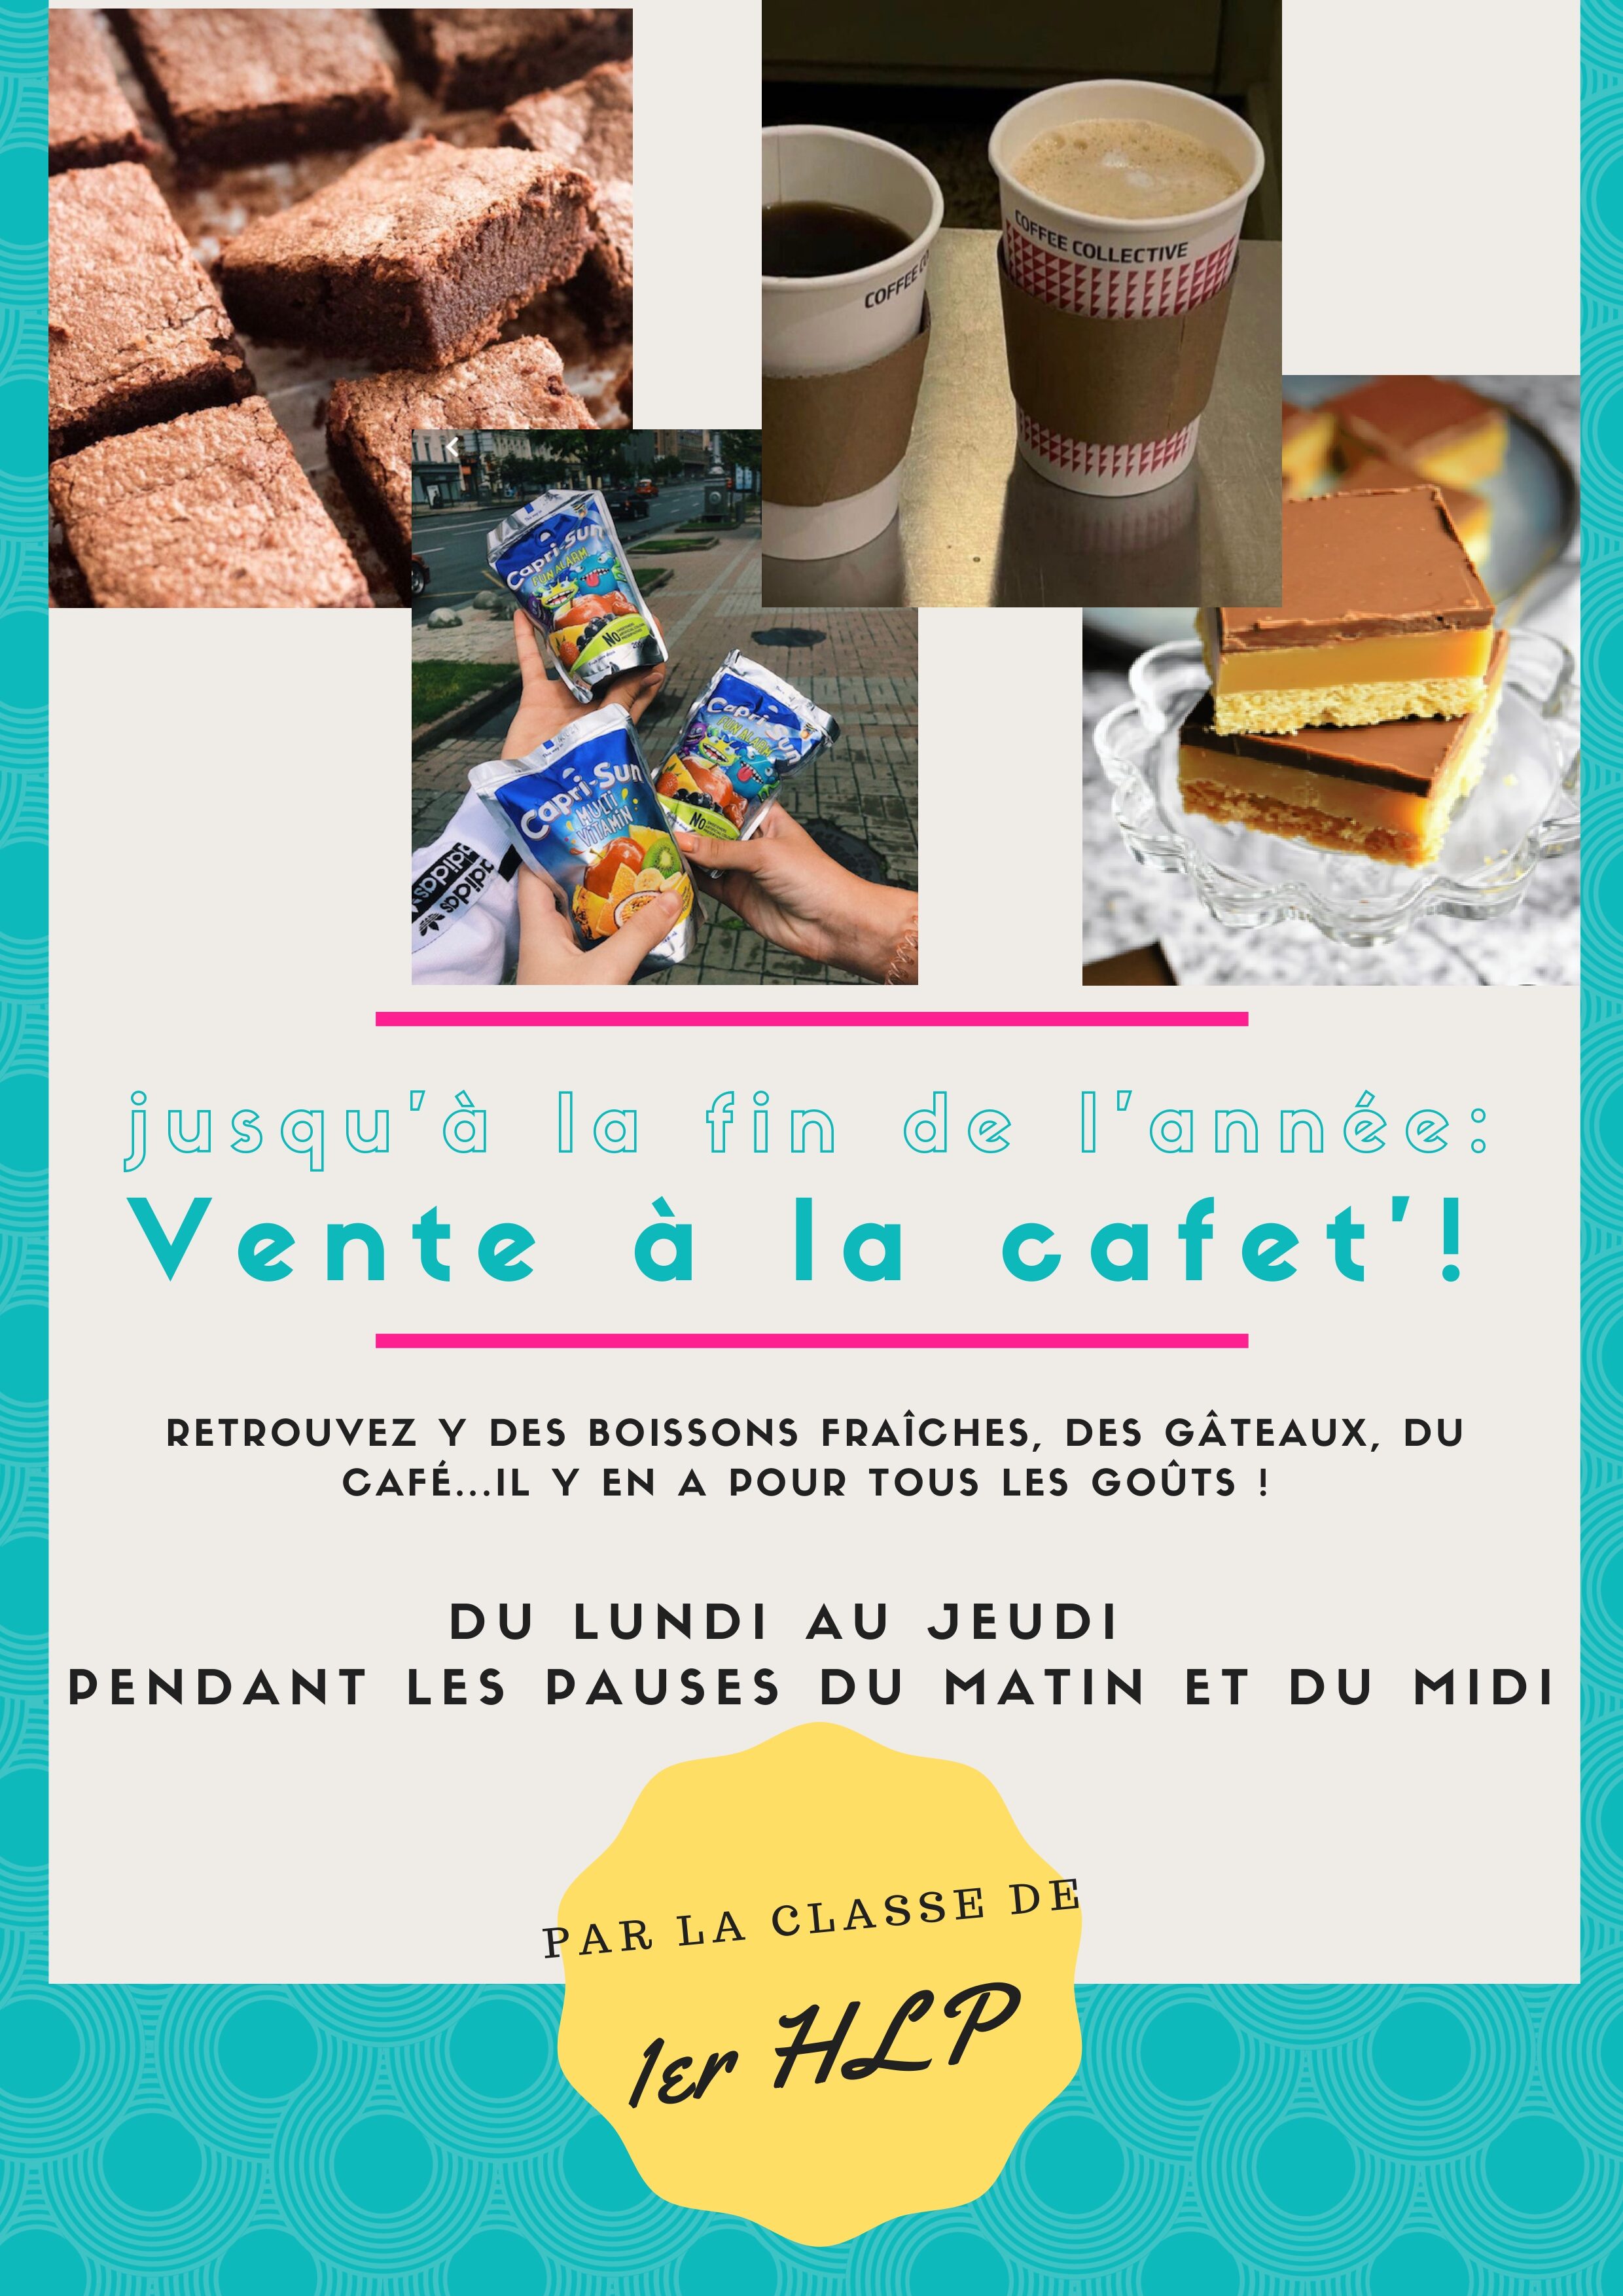 Vente de gâteaux_page-0001 (1).jpg